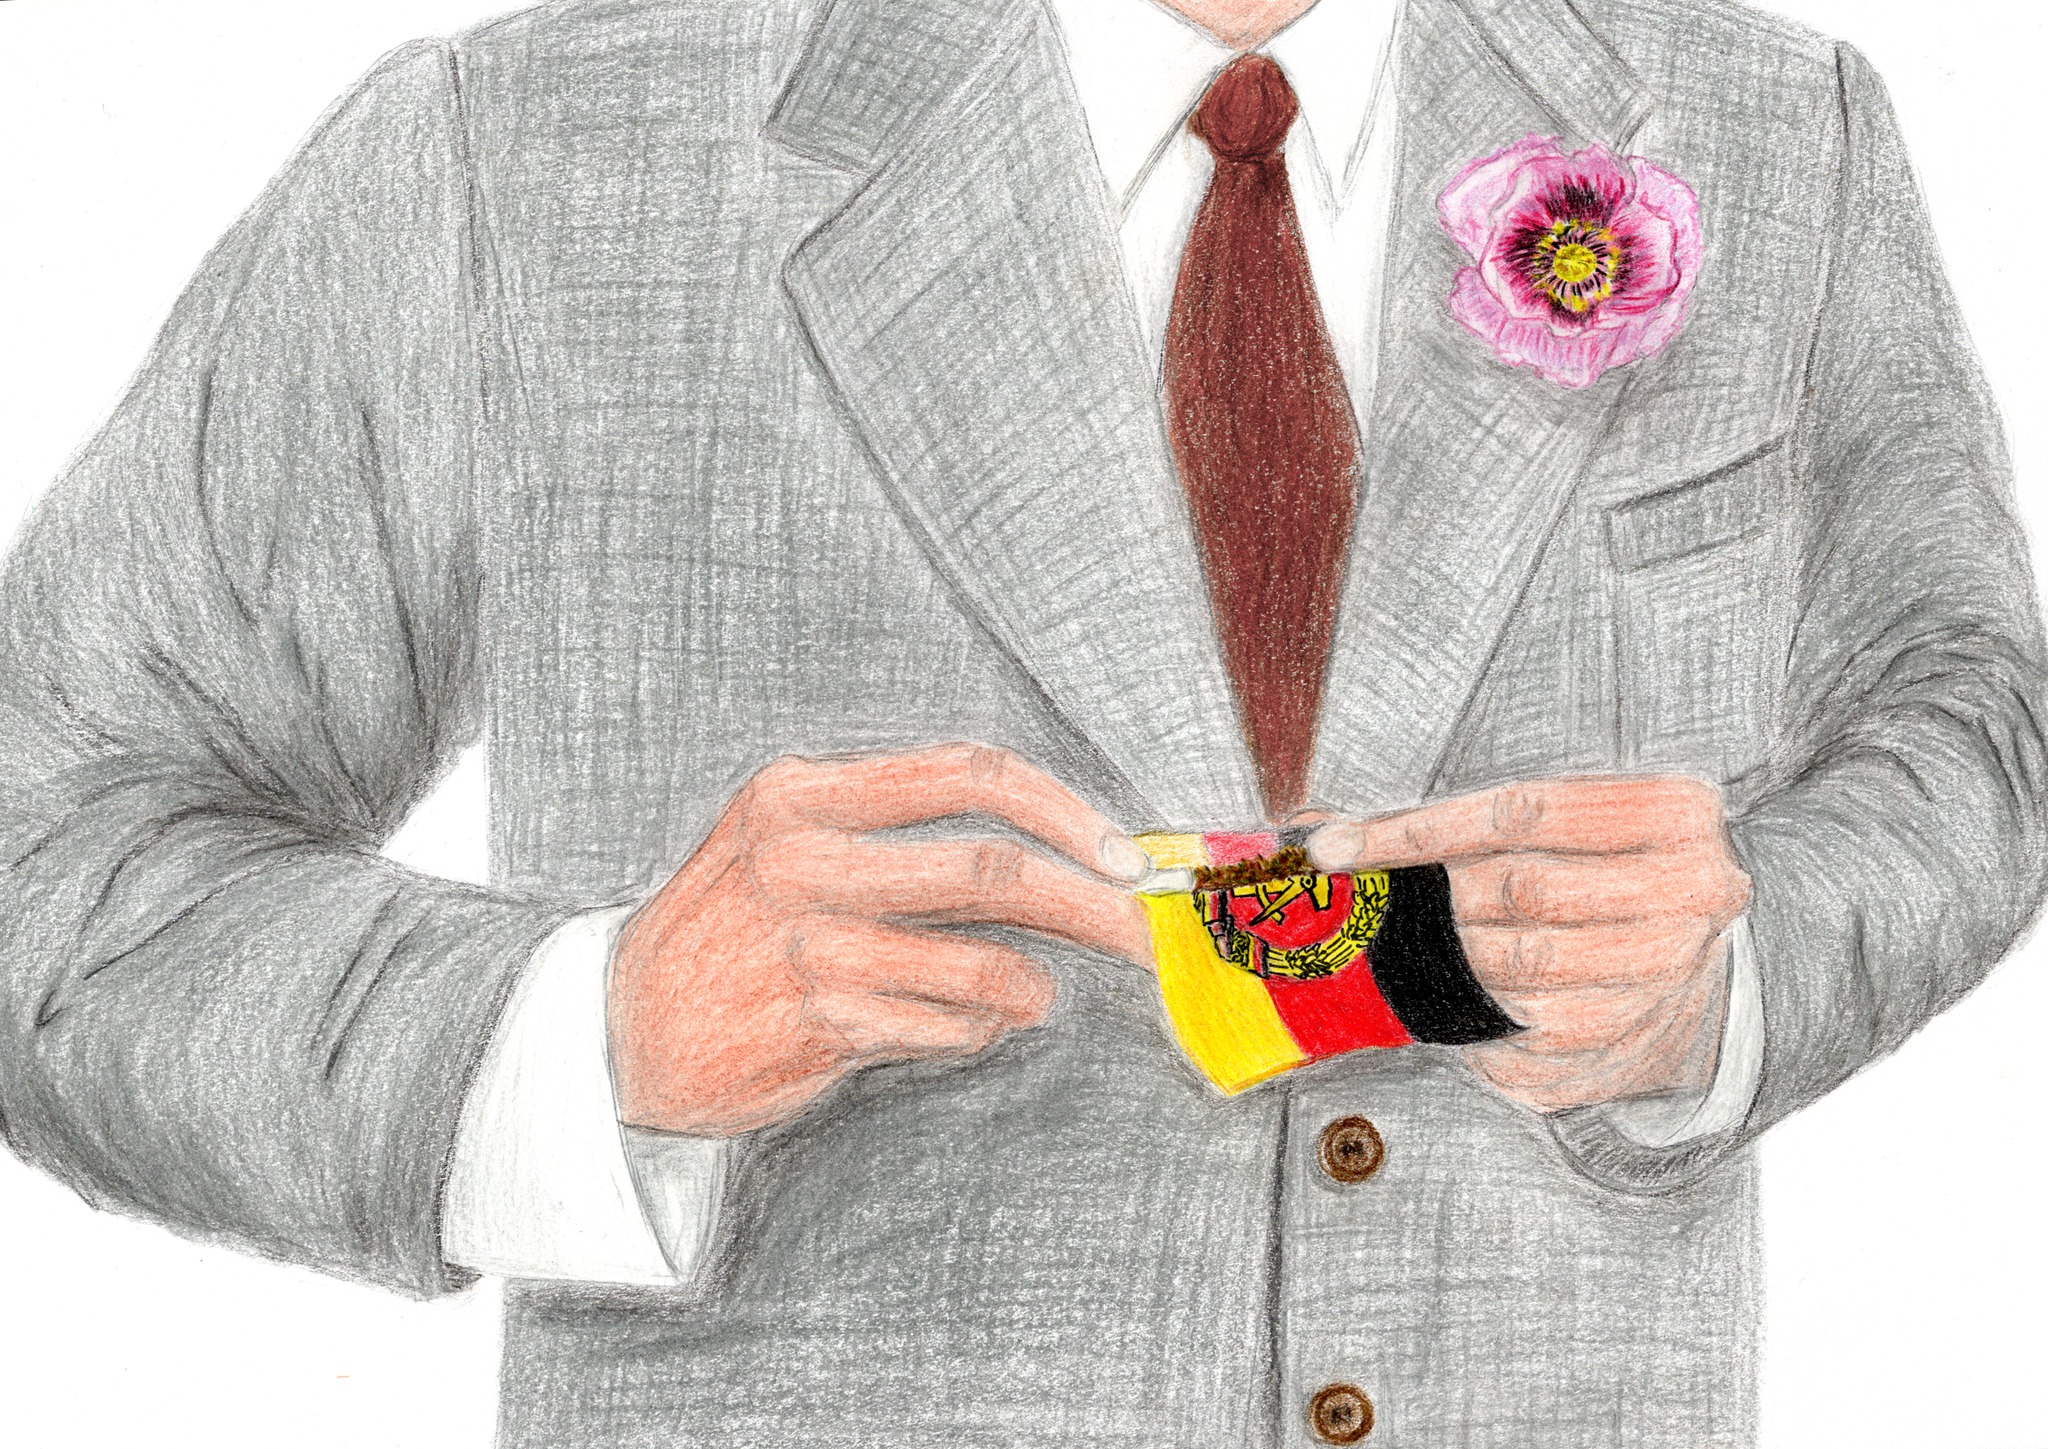 Eine Zeichnung: Sie zeigt den Oberkörper eines Mannes, der sich mit beiden Händen aus einer DDR-Fahne ein Röhrchen dreht. Am Revers des grauen Anzugs steckt neben der roten Krawatte eine rot-rosa Nelke.